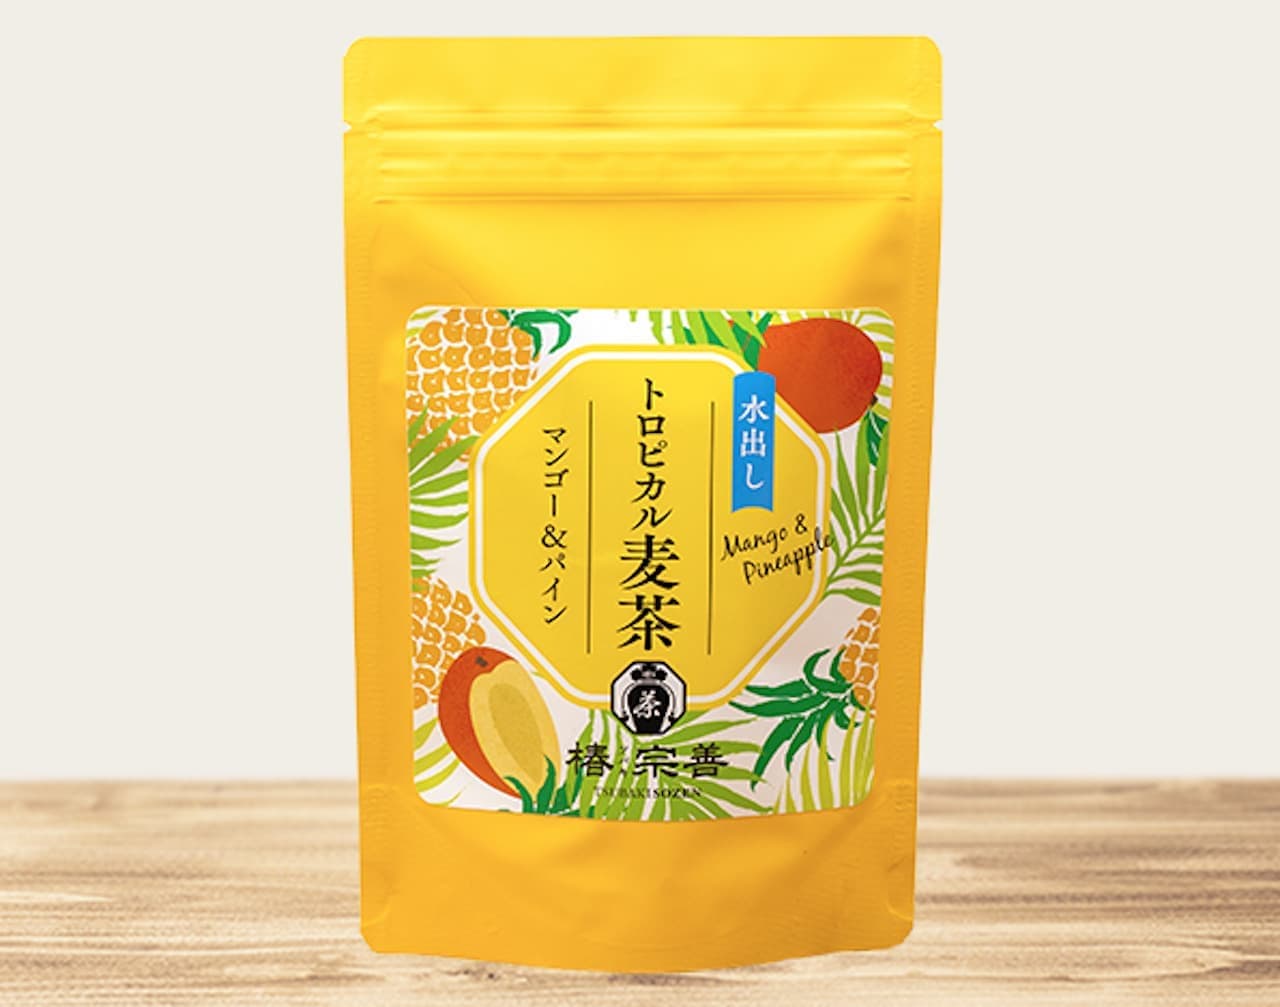 Tsubaki Sozen "Tropical Barley Tea